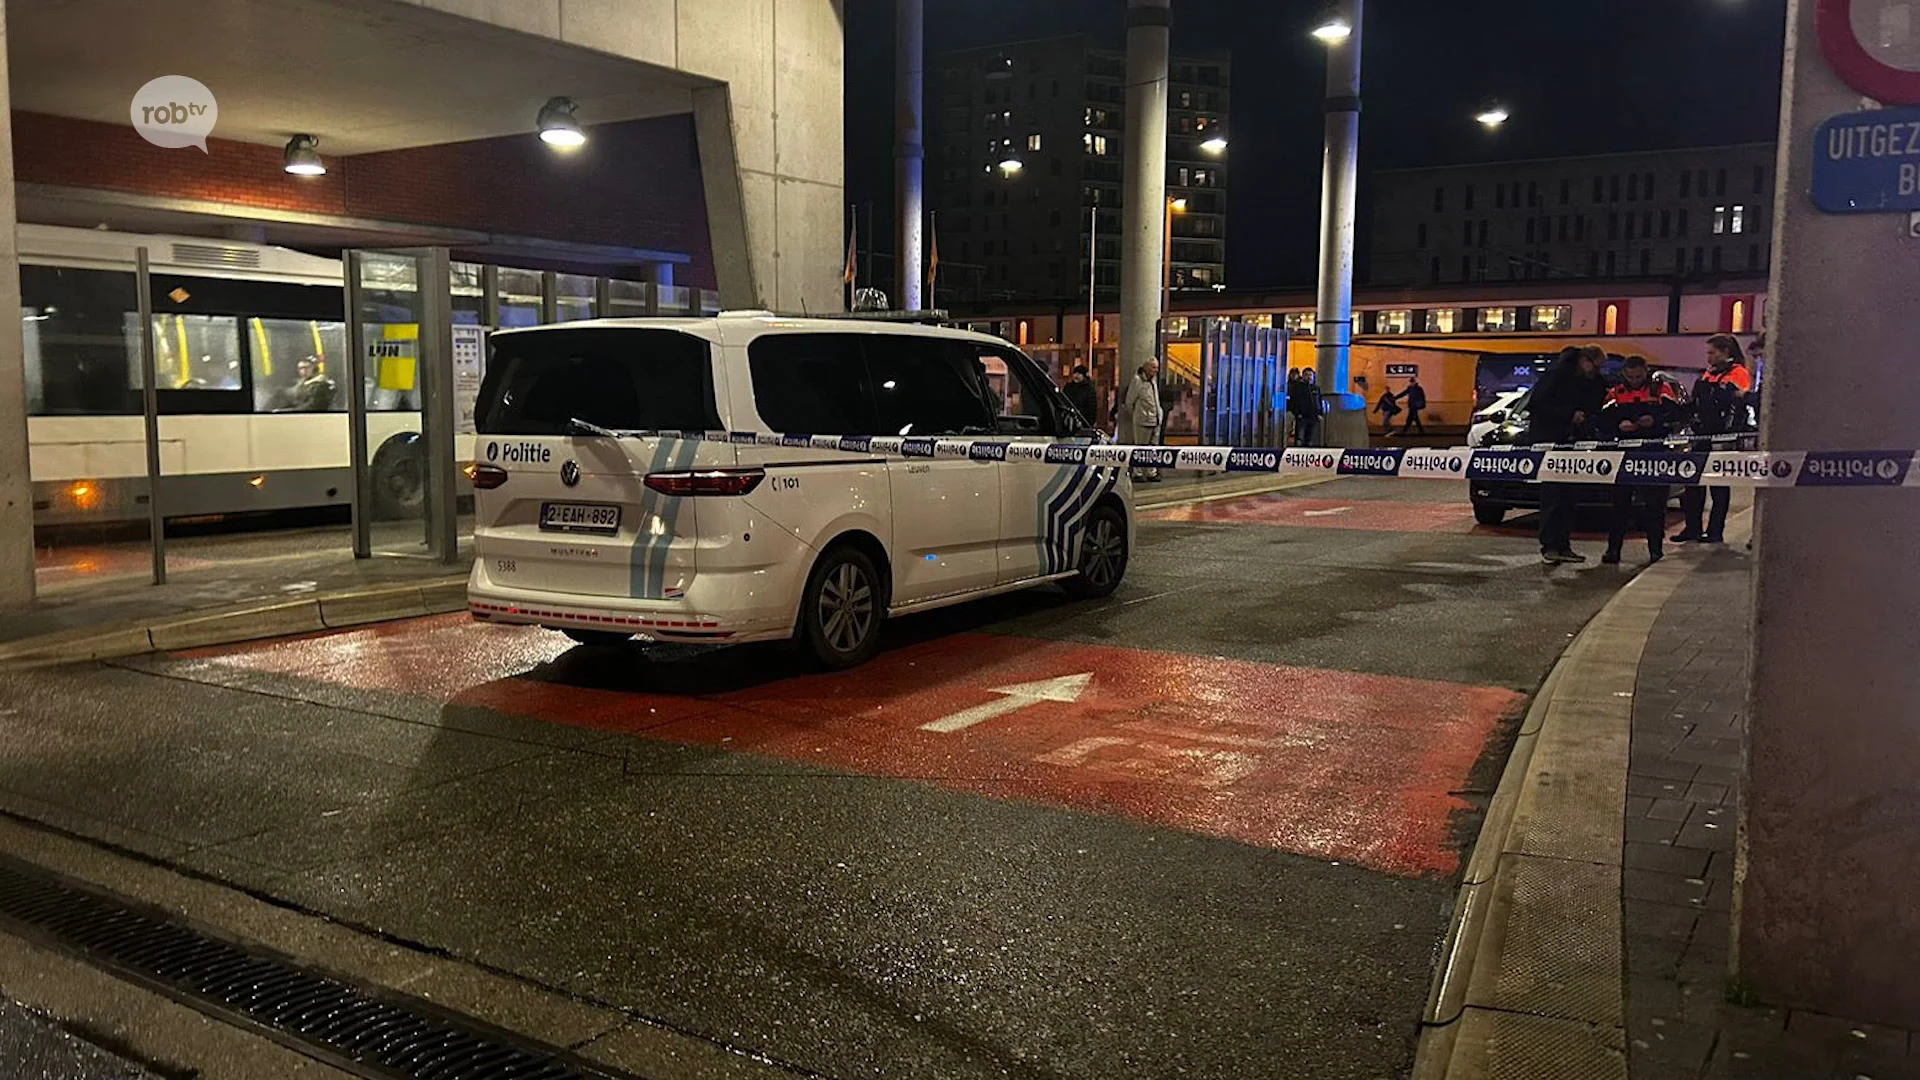 Ernstig ongeval met lijnbus aan station van Leuven: slachtoffer naar UZ Leuven overgebracht